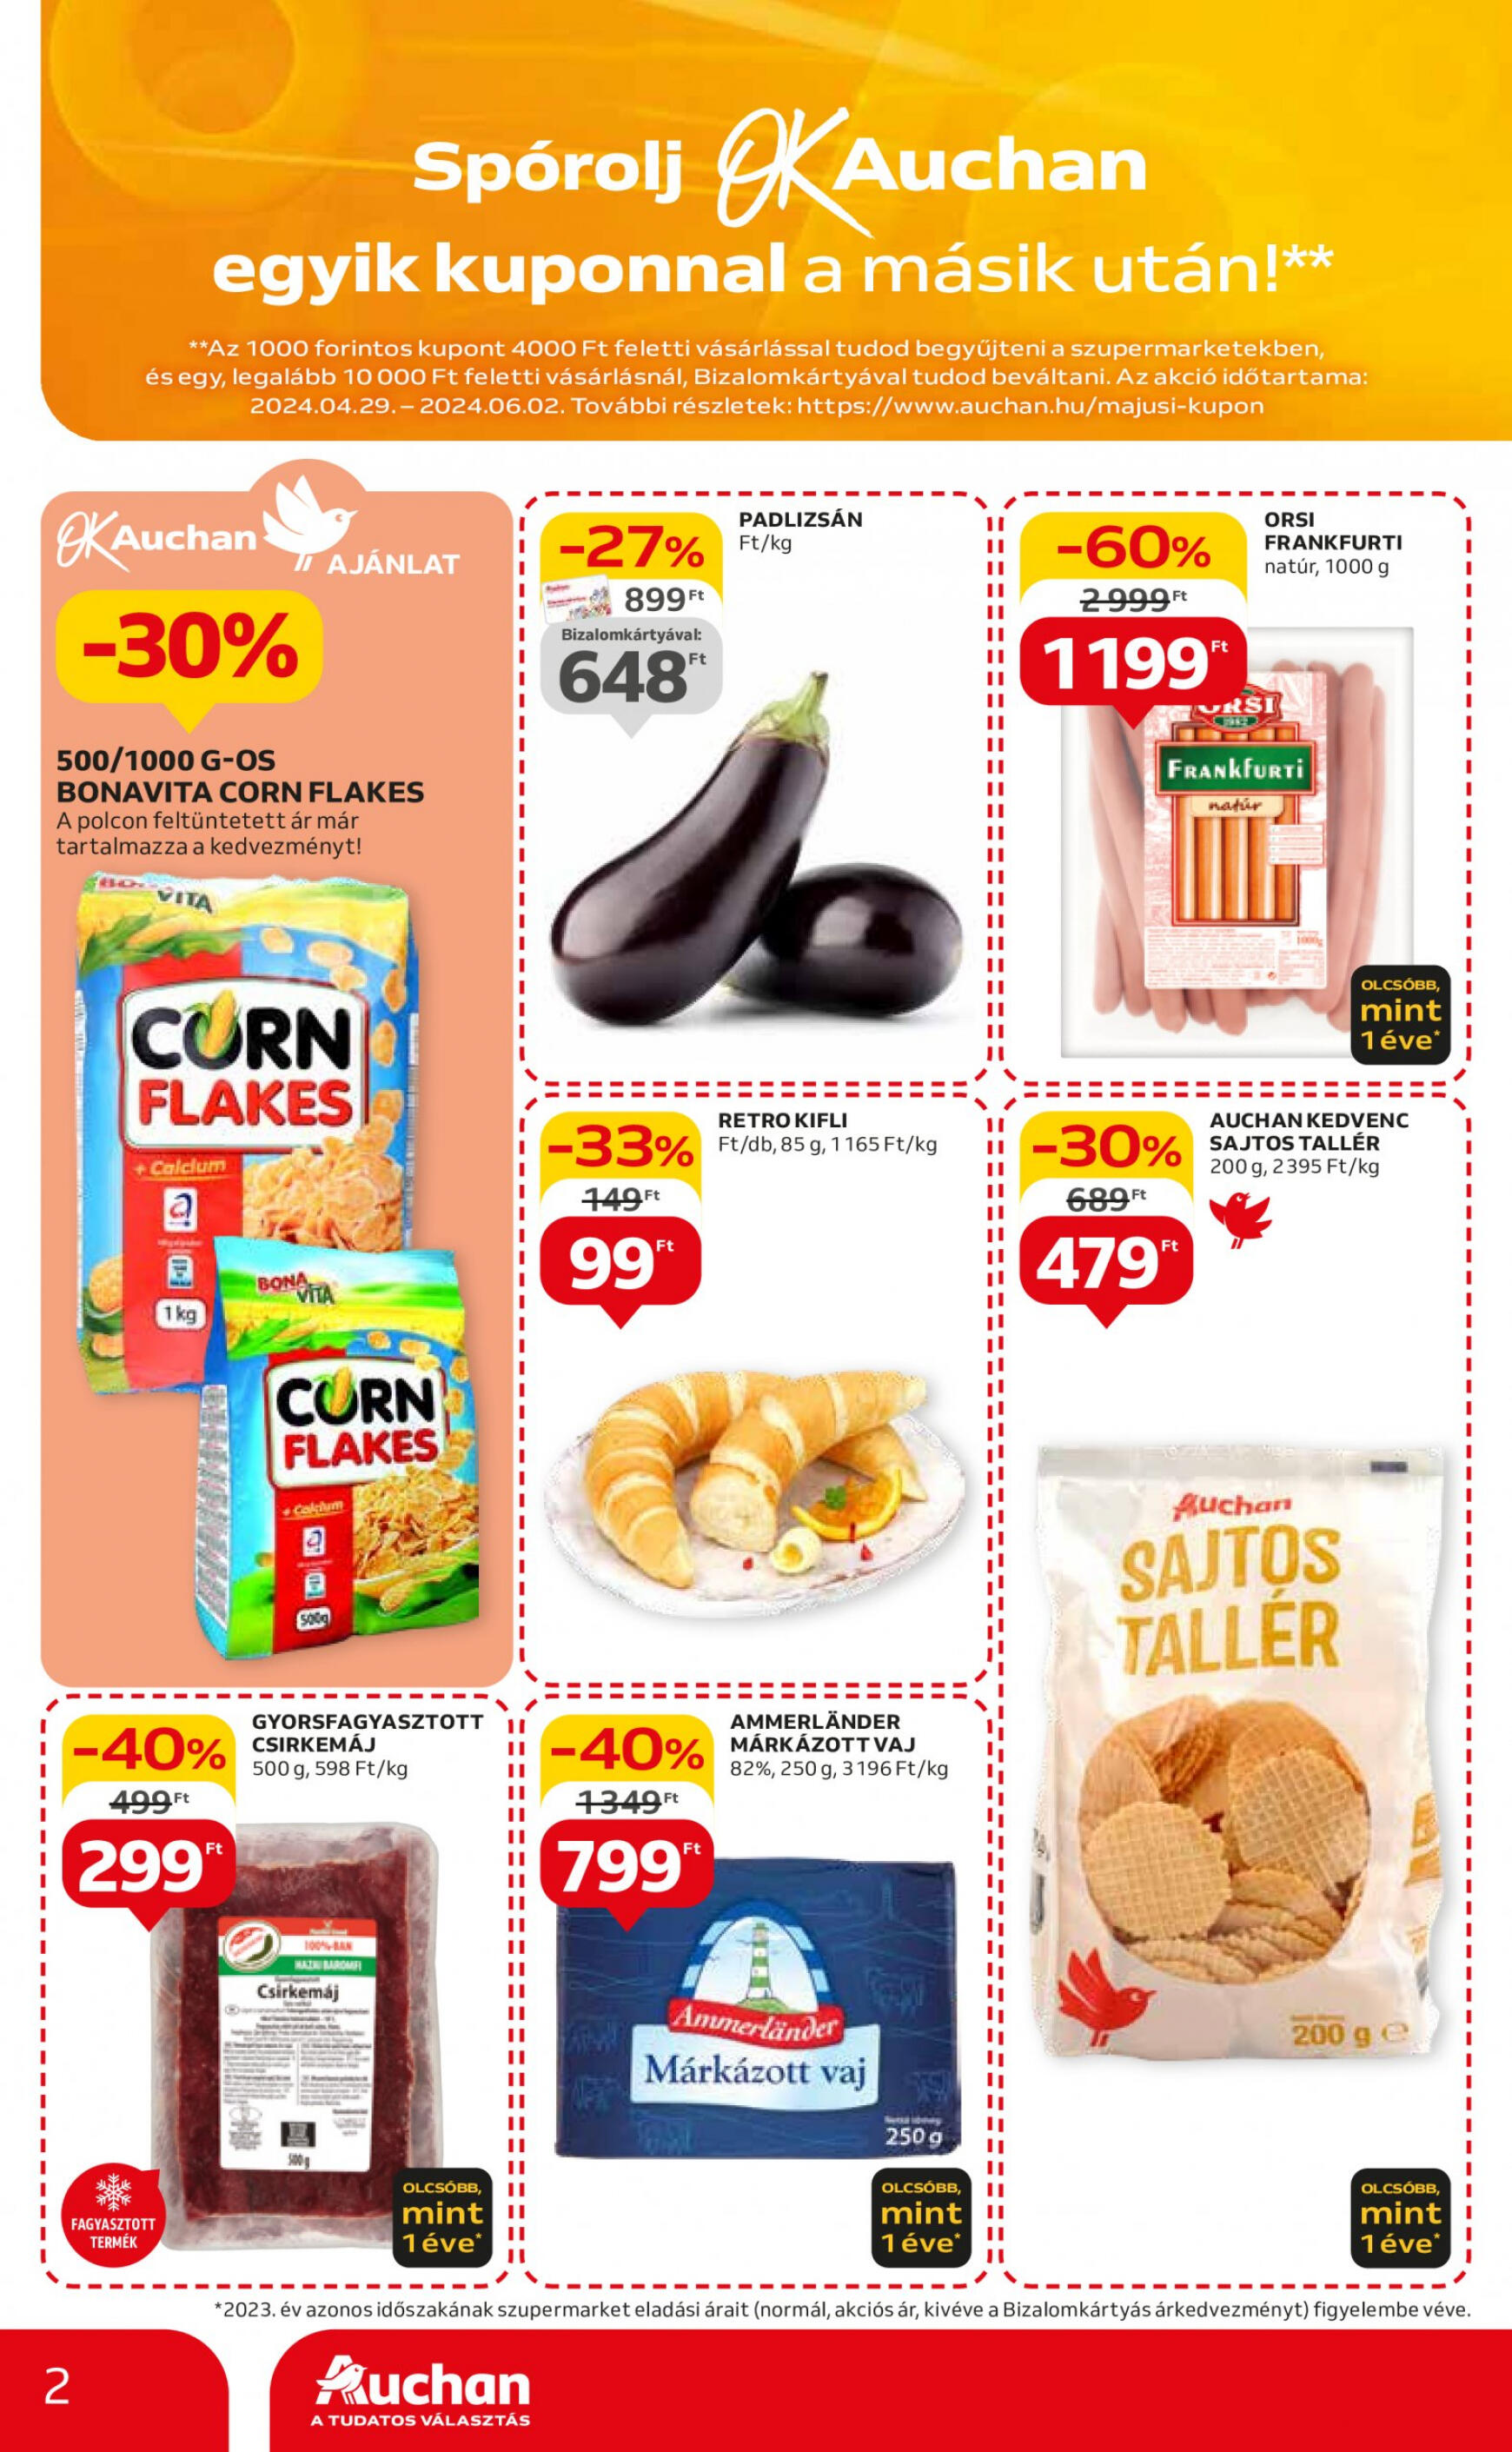 auchan - Aktuális újság Auchan szupermarket 05.09. - 05.15. - page: 2